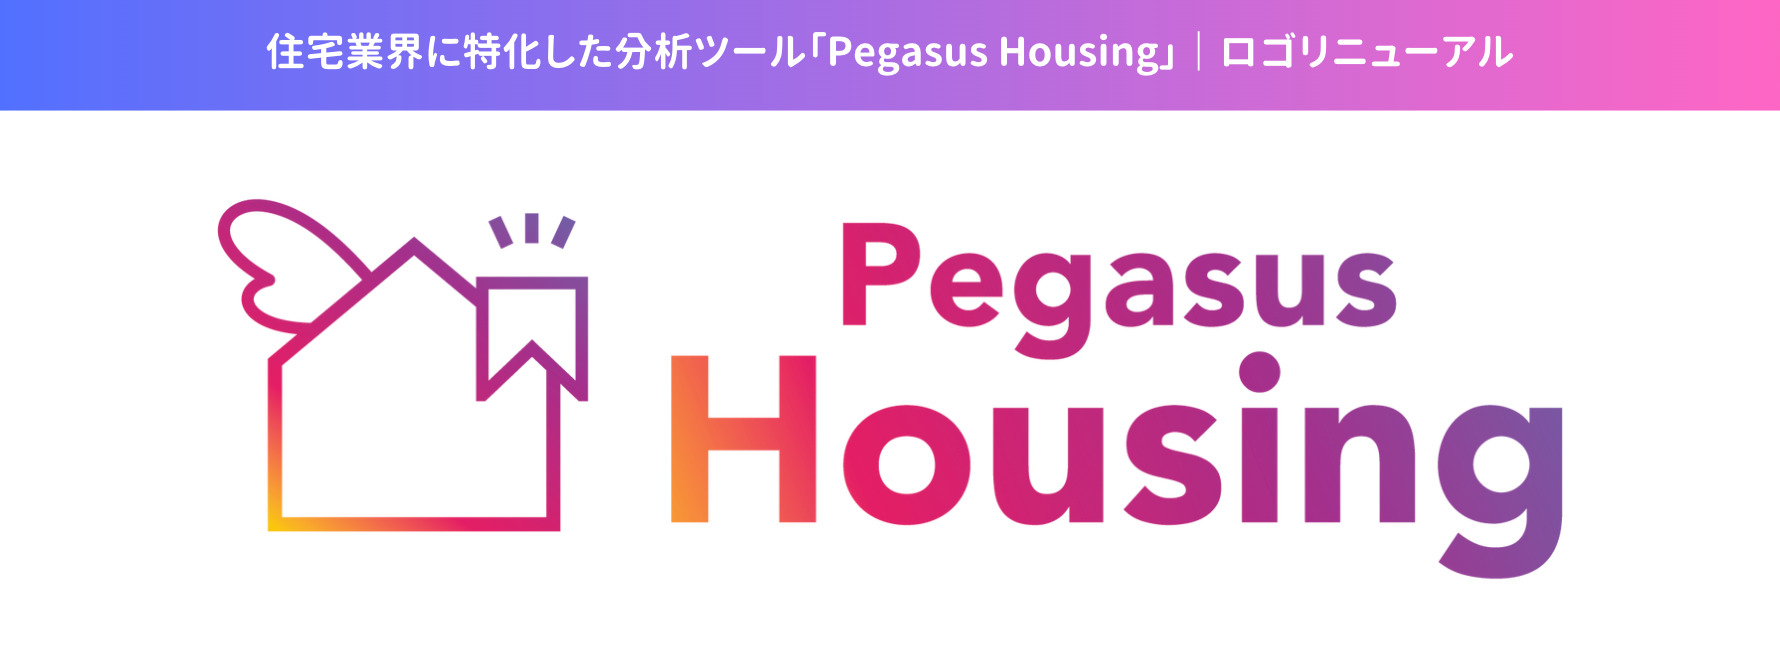 住宅特化で集客課題と業務改善を支援する「Pegasus Housing」が商標登録完了。住宅業界のニーズに応えるべく...